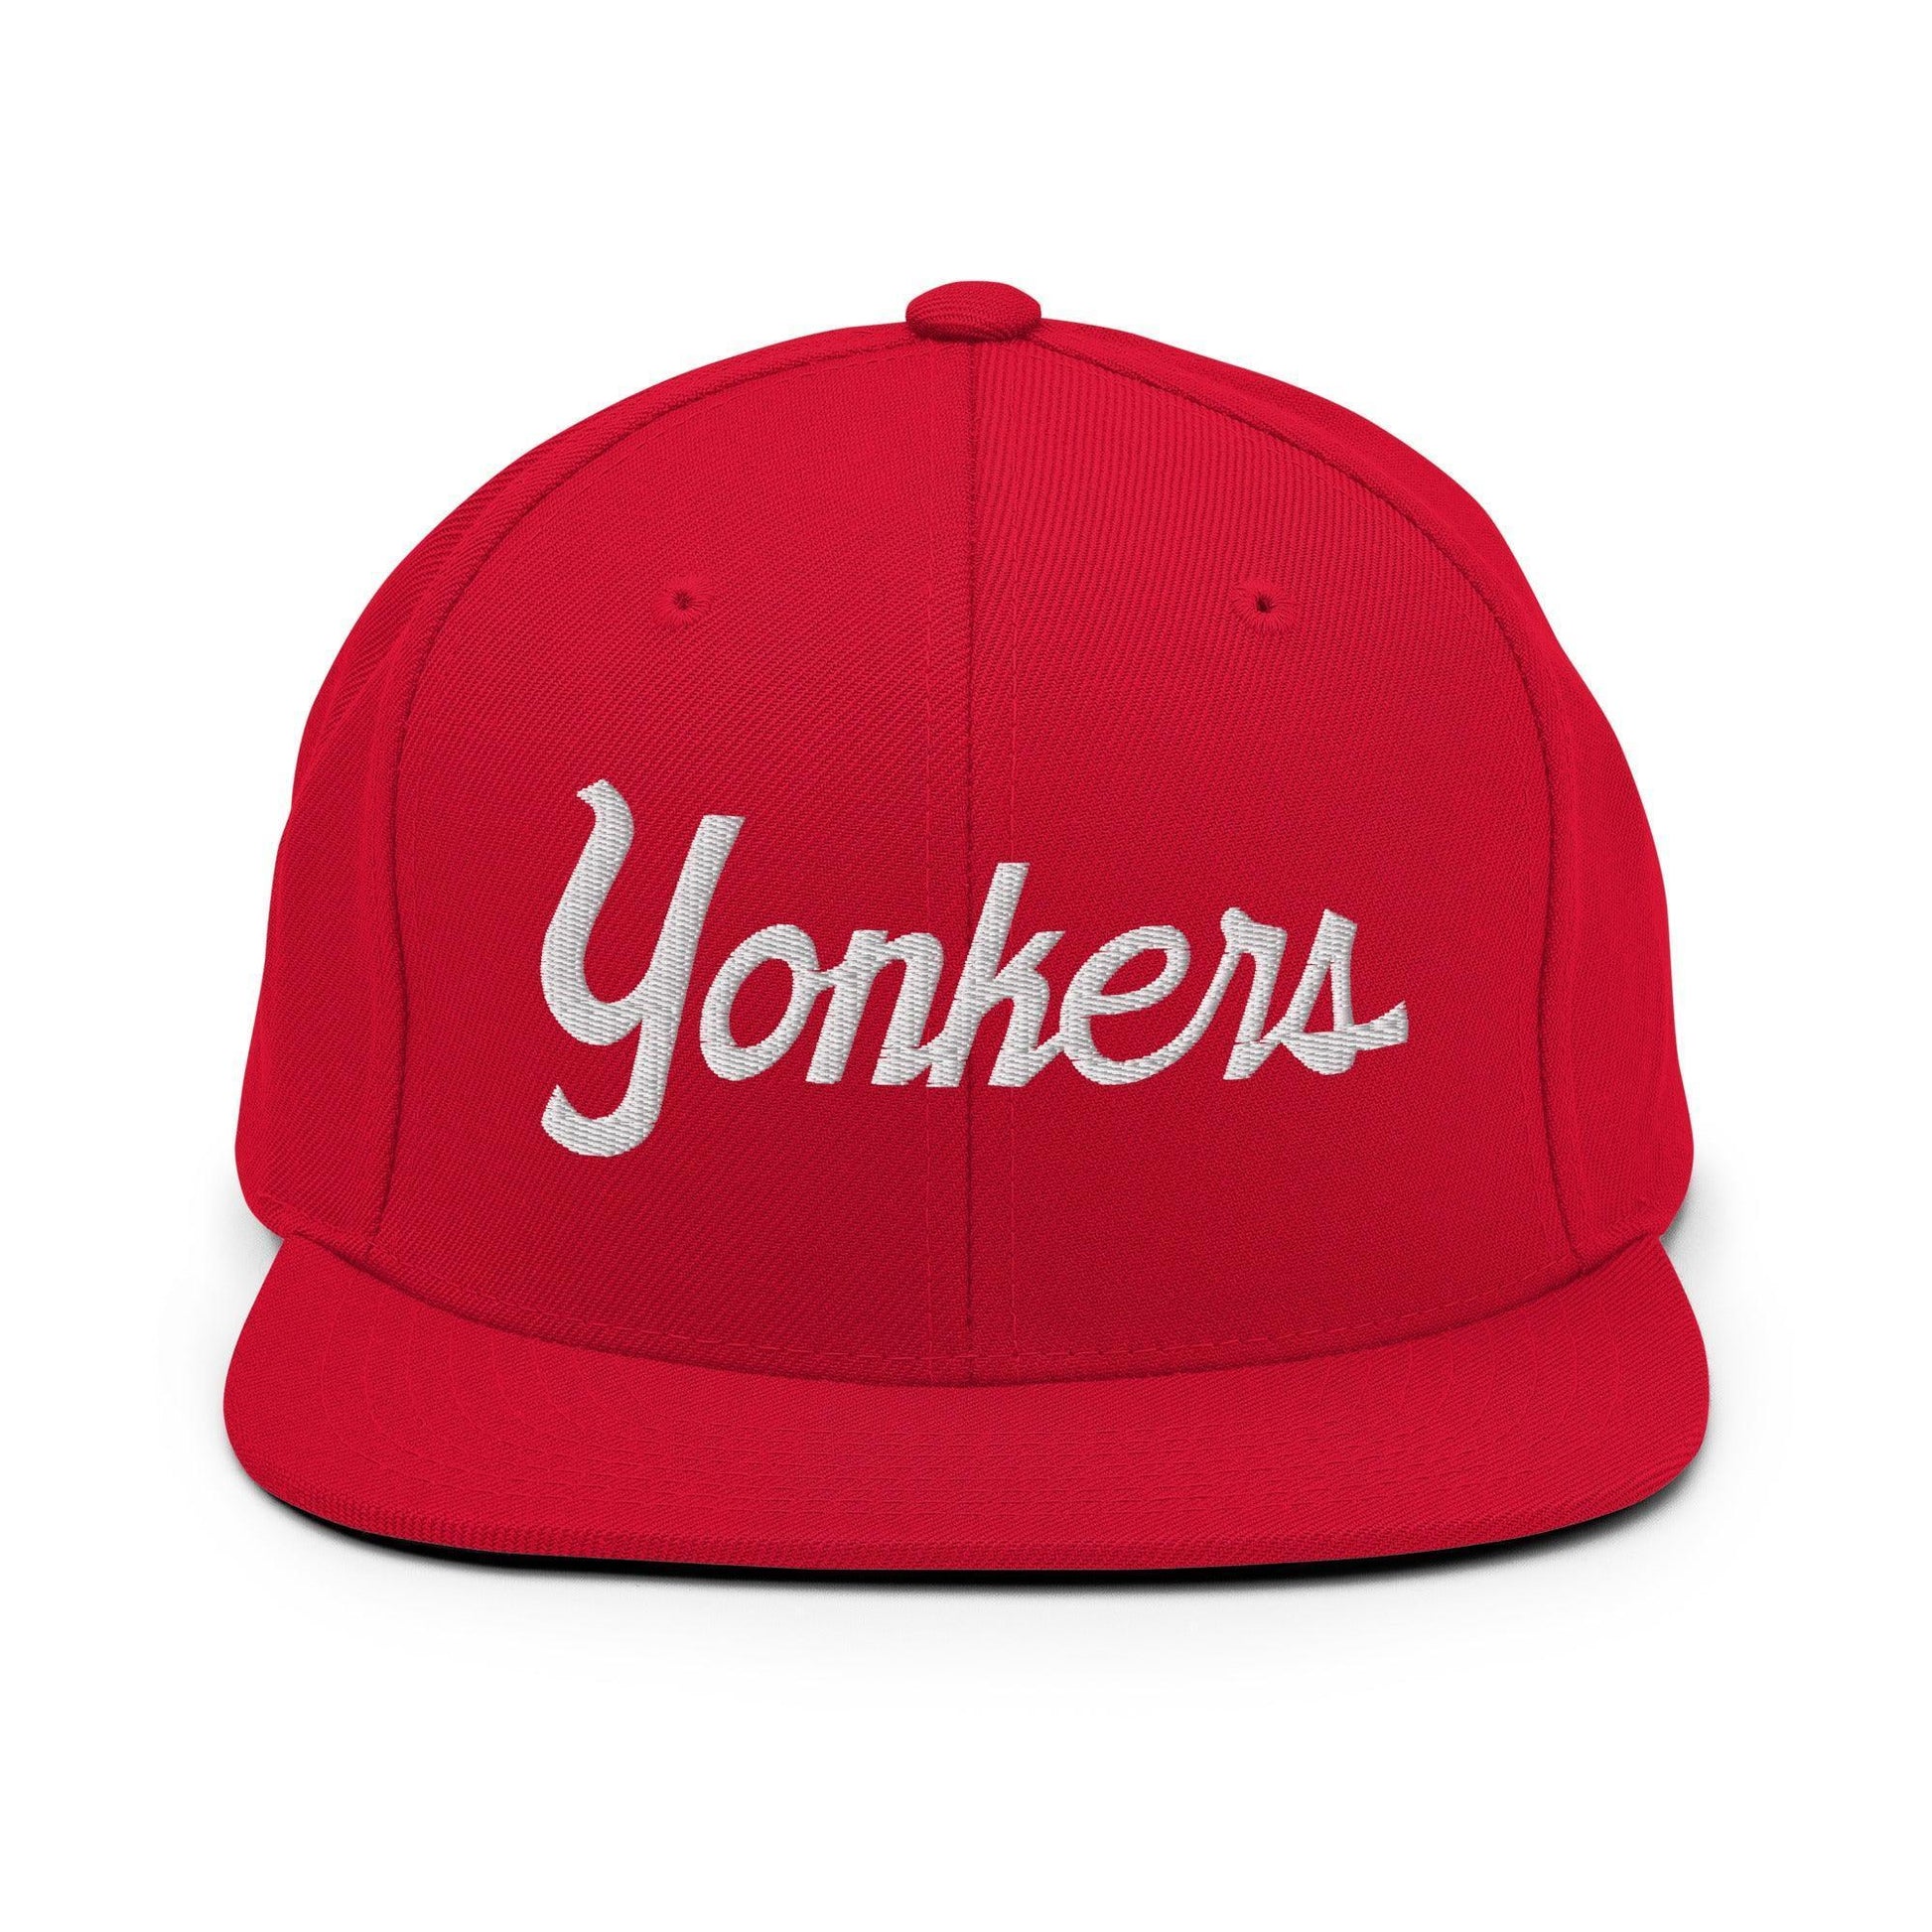 Yonkers Script Snapback Hat Red